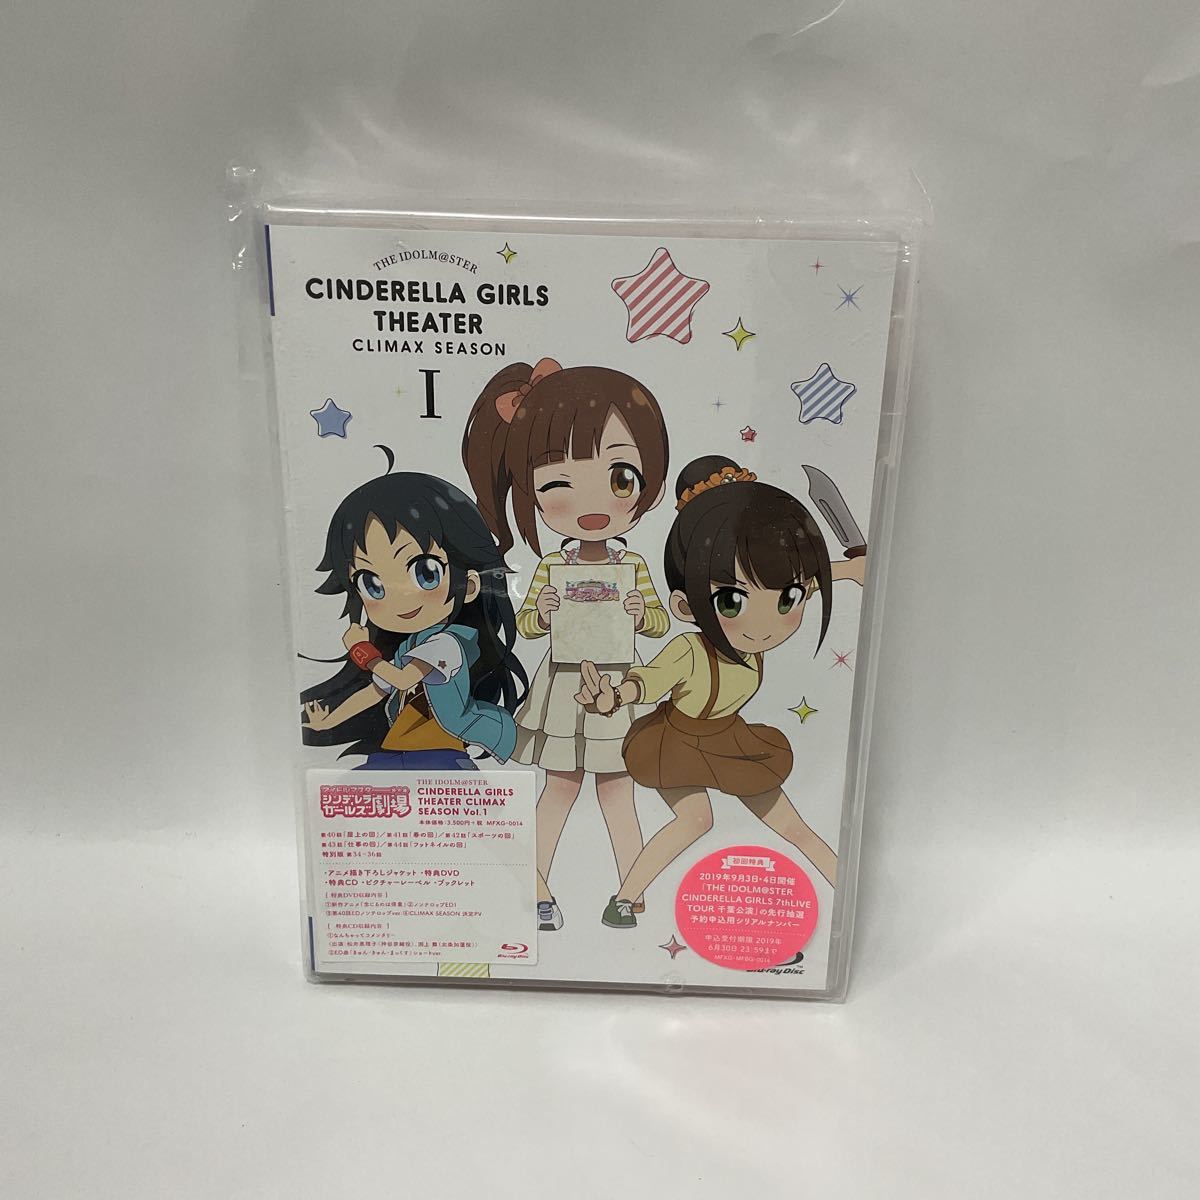 アイドルマスターシンデレラガールズ劇場 CLIMAX SEASON vol.1 / Blu-ray